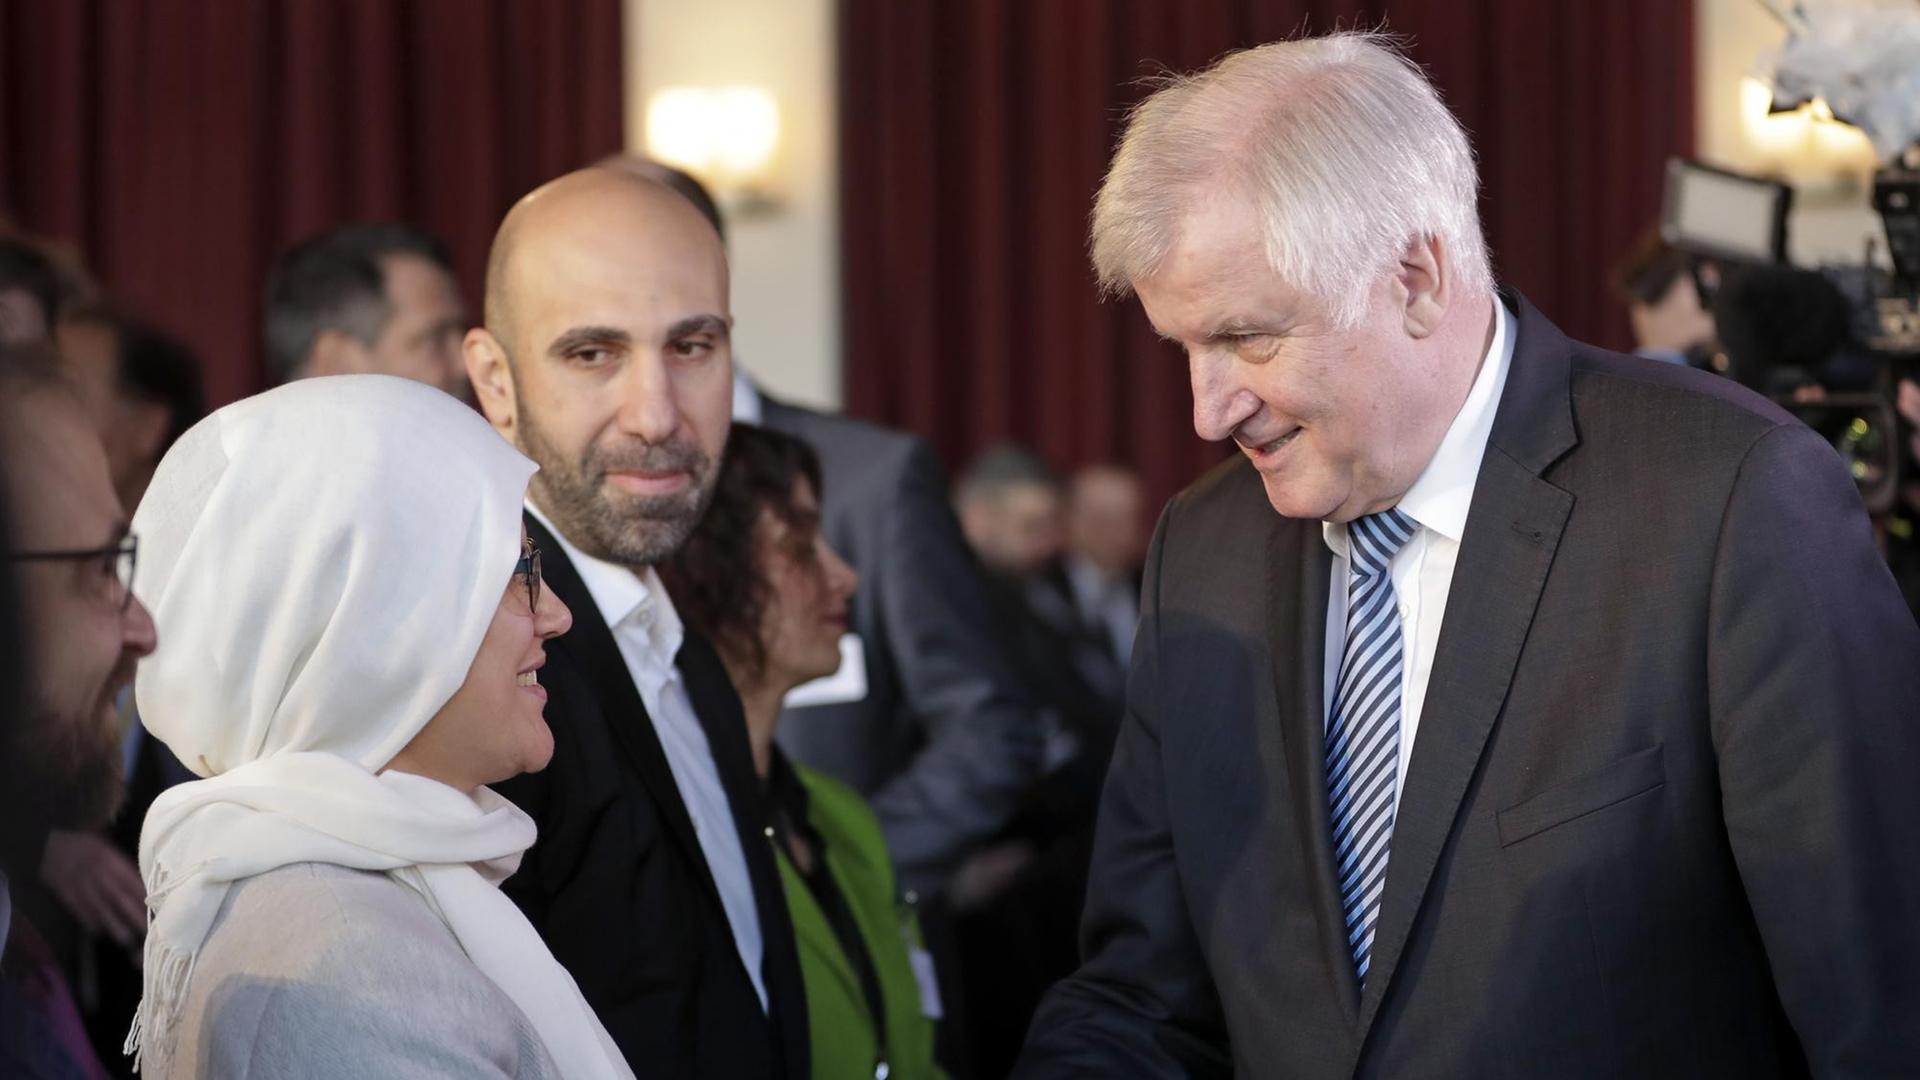 Bundesinnenminister Horst Seehofer schüttelt die Hand einer Frau, die ein weißes Kopftuch trägt.